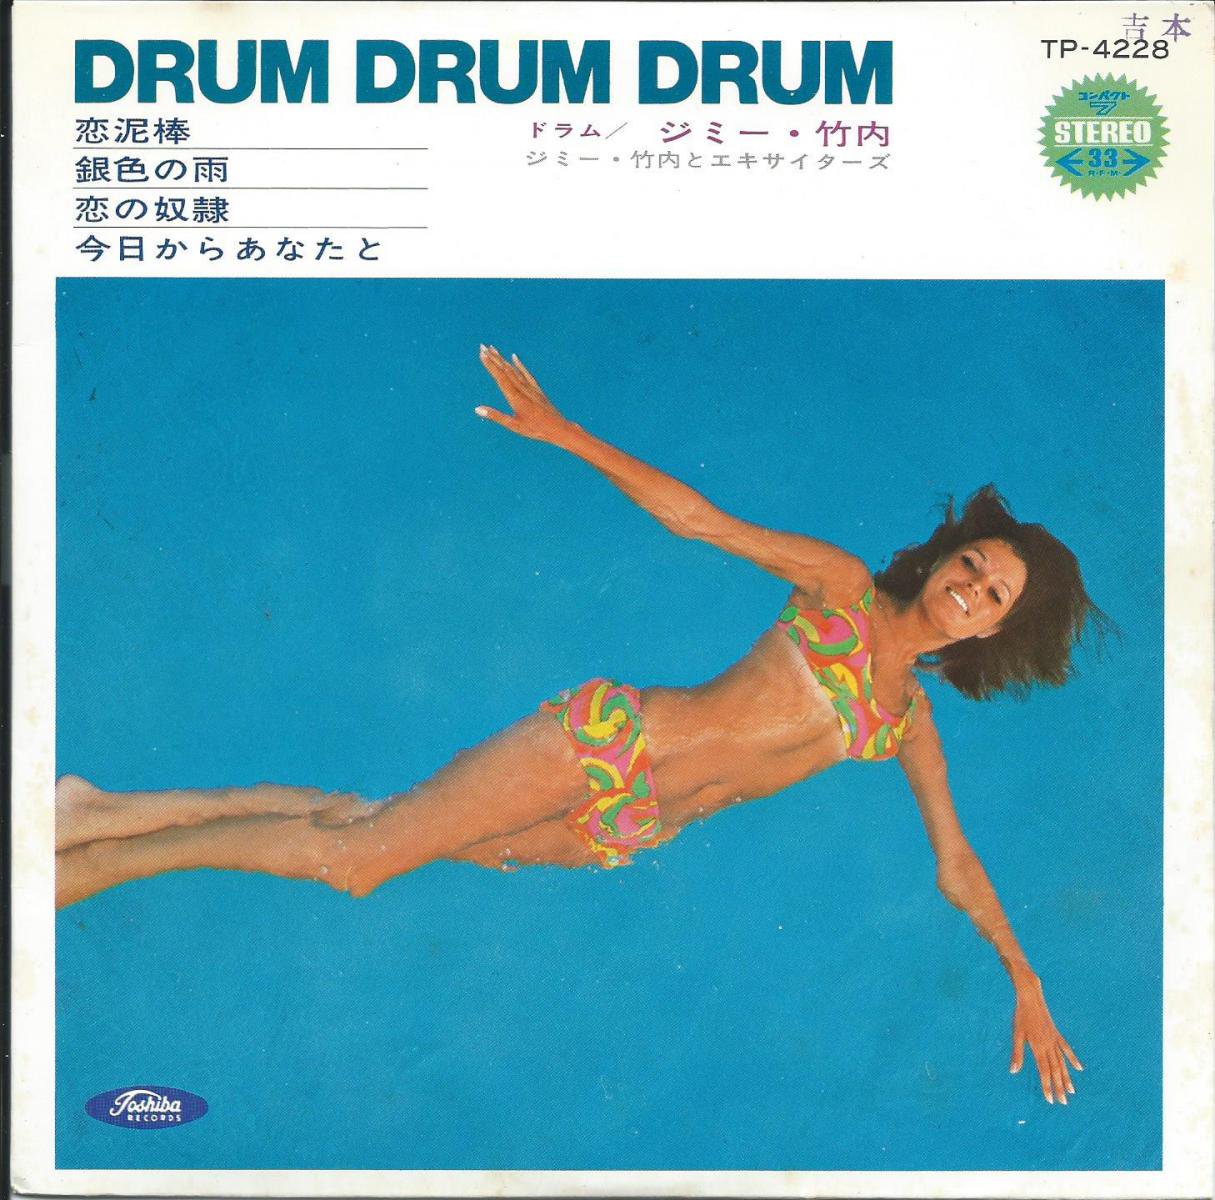 ジミー竹内 (ドラム)とエキサイターズ (JIMMY TAKEUCHI) / ドラム・ドラム・ドラム DRUM DRUM DRUM (7